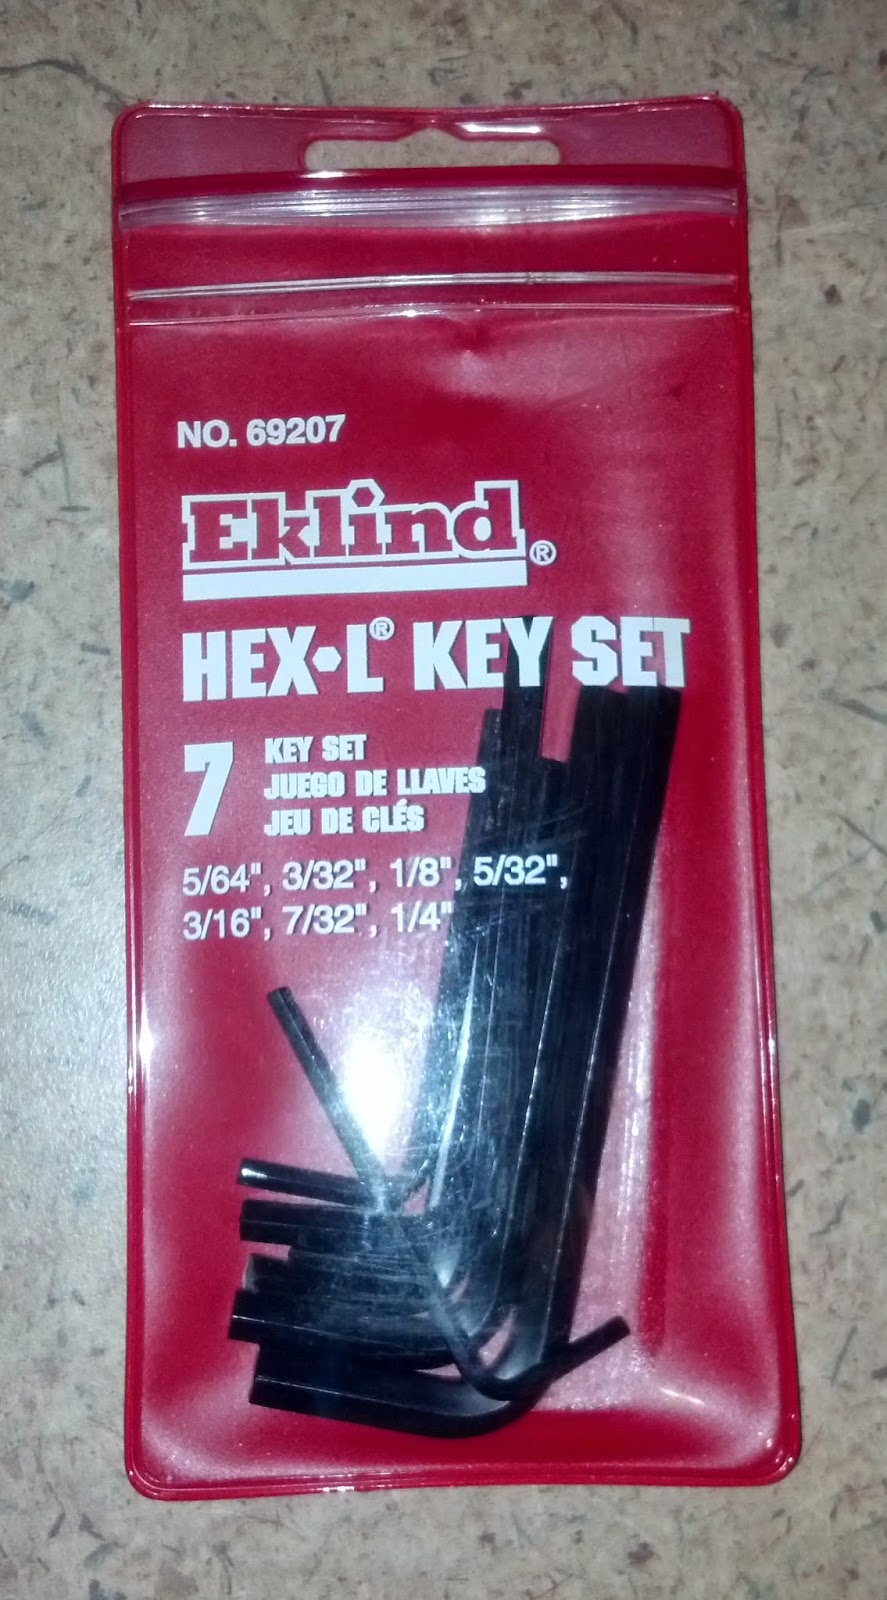 Eklind Tool Eklind 15306 3/32 Six Series Hex-L Key, Pack of 5